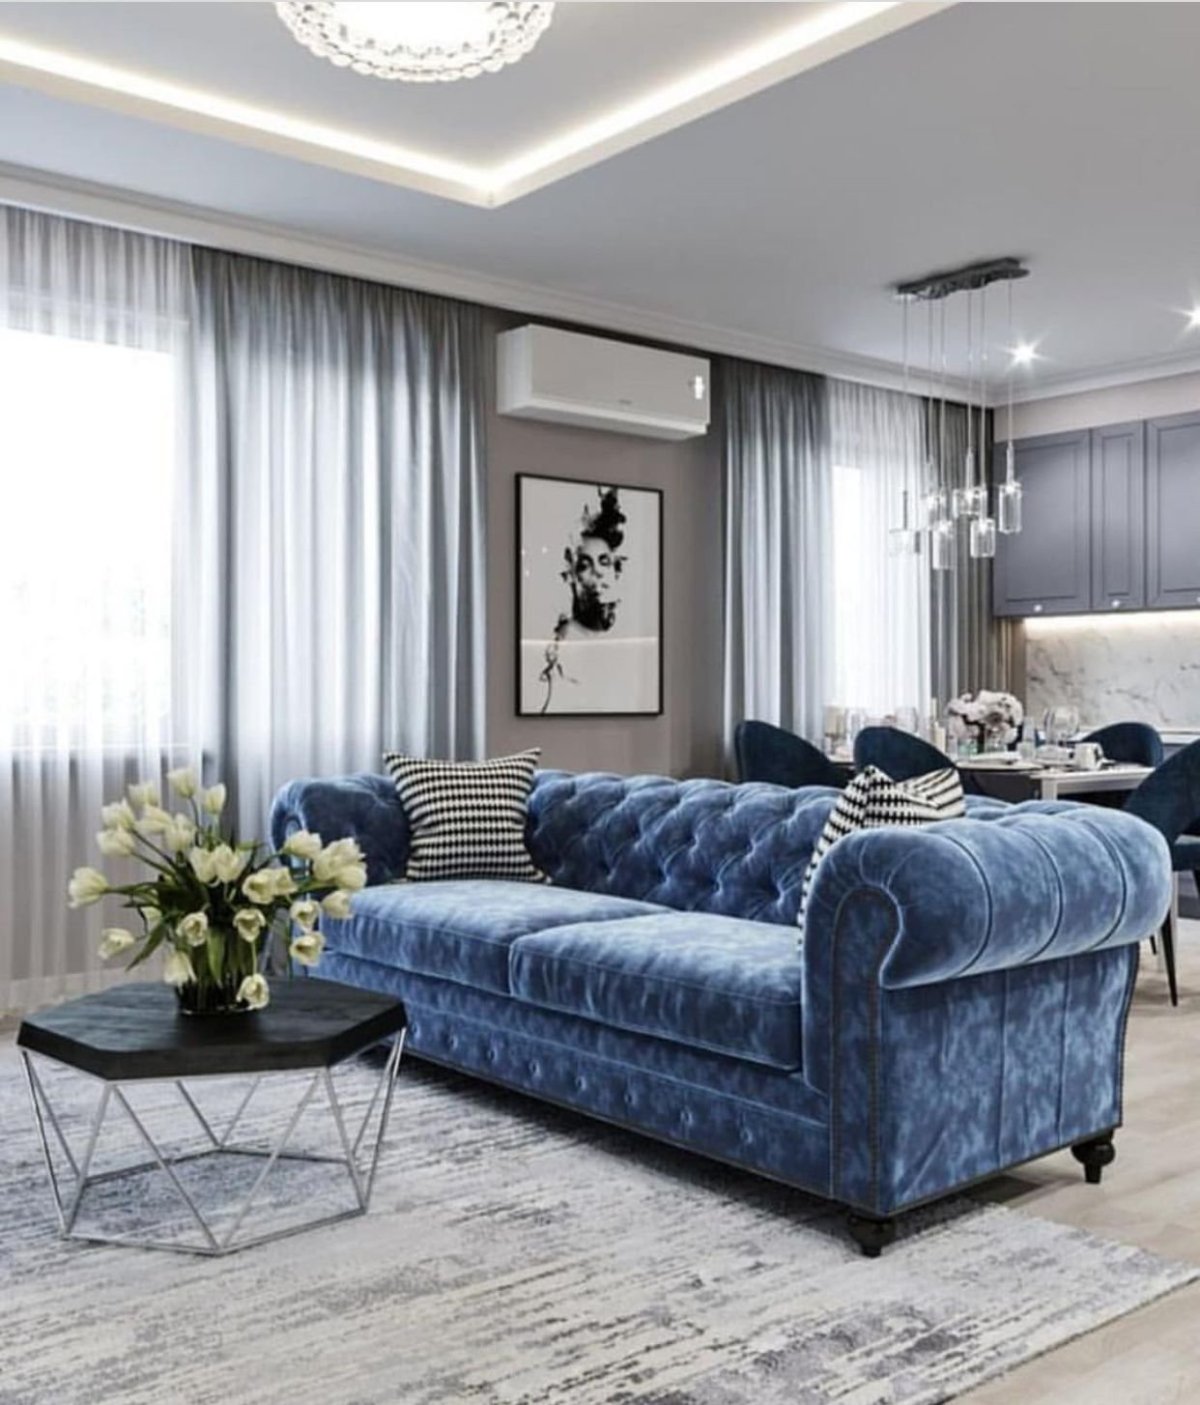 Интерьер гостиной с синим диваном